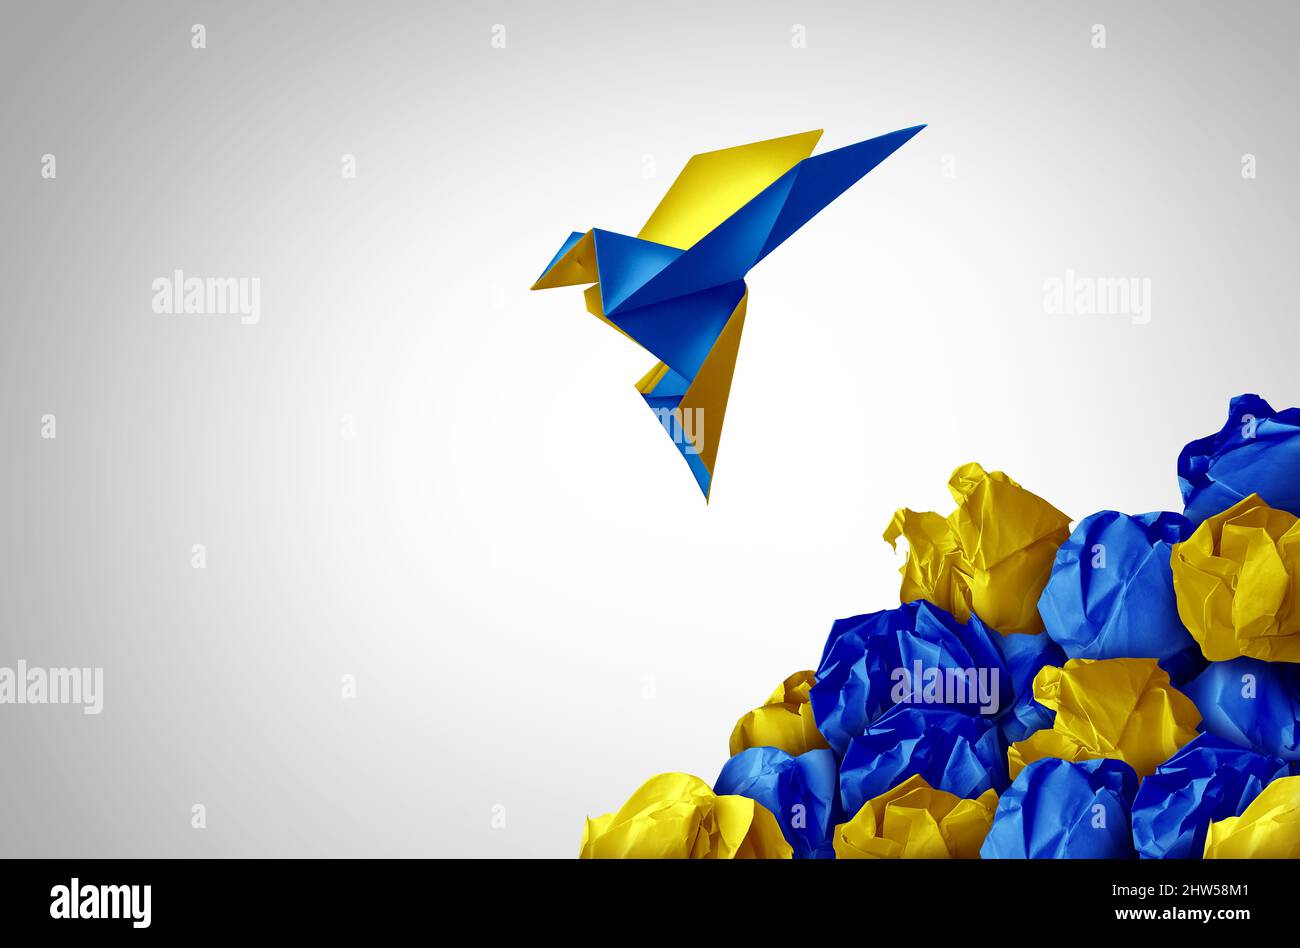 Speranza per il popolo ucraino simbolo come un gruppo di ucraini insieme con la bandiera dell'Ucraina come un paese dell'Europa orientale in uno stile di illustrazione 3D. Foto Stock